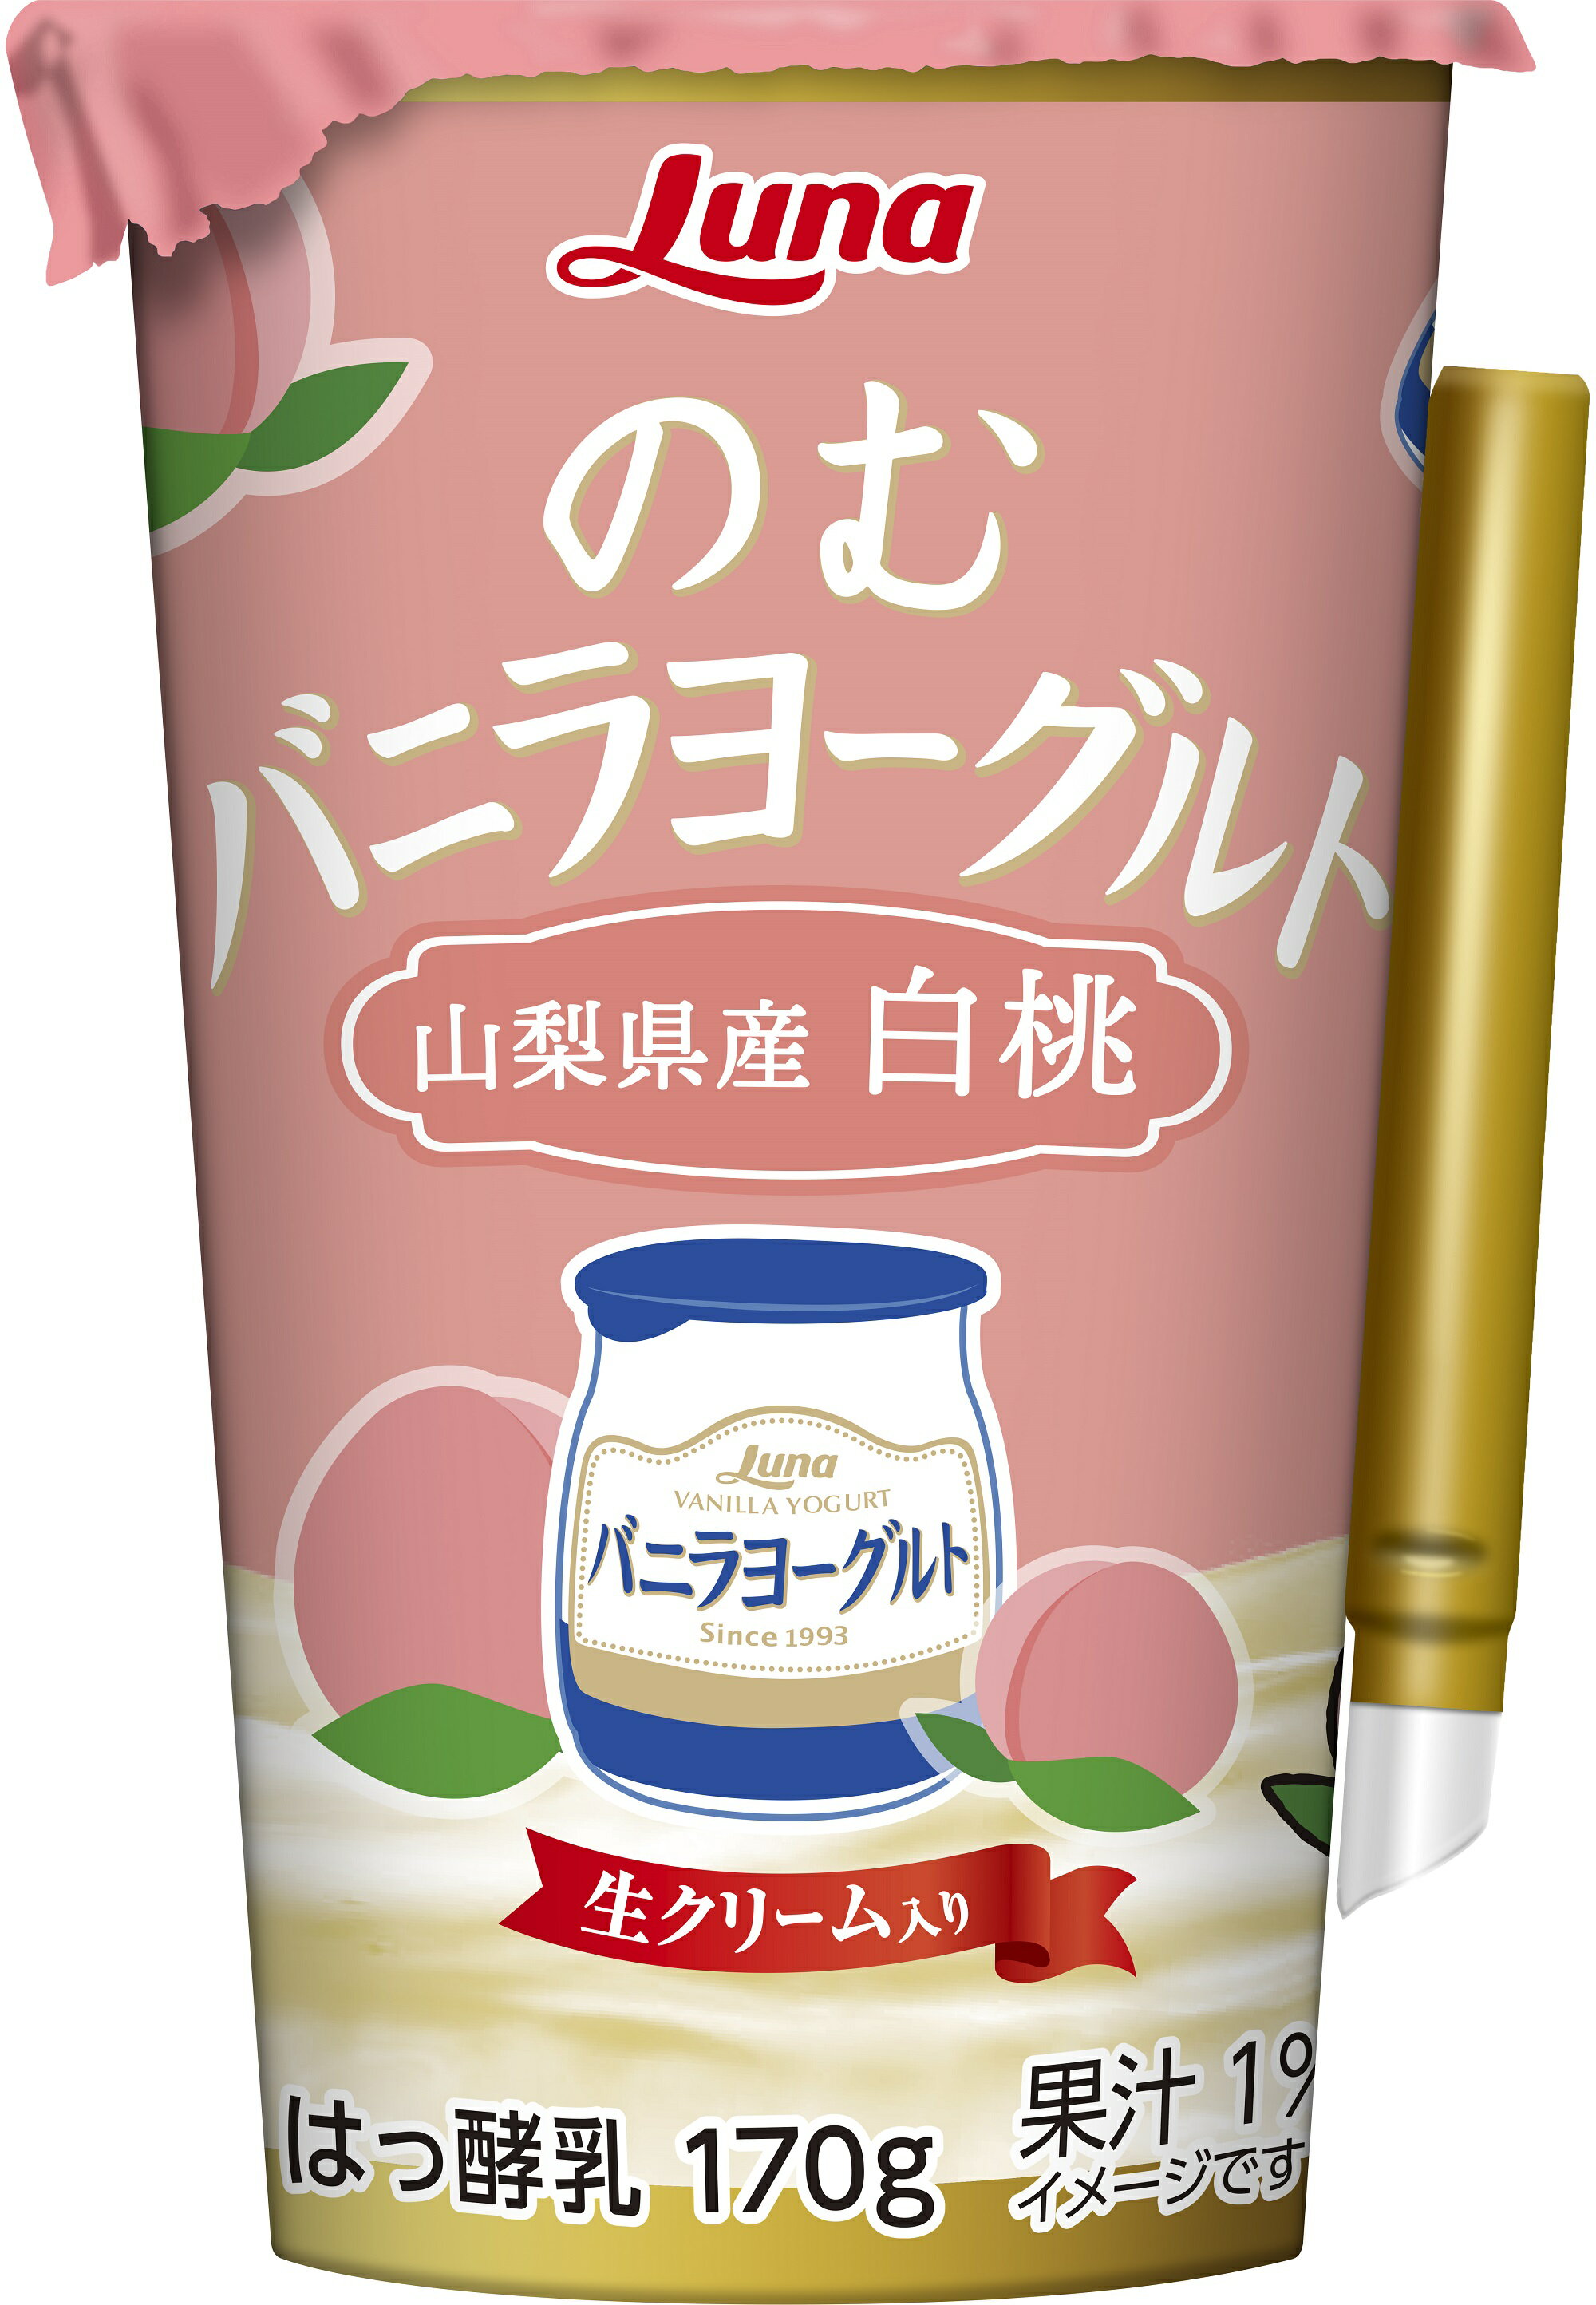 のむバニラヨーグルト 山梨県産 白桃 170g 8本 乳製品 ドリンク 日本ルナ